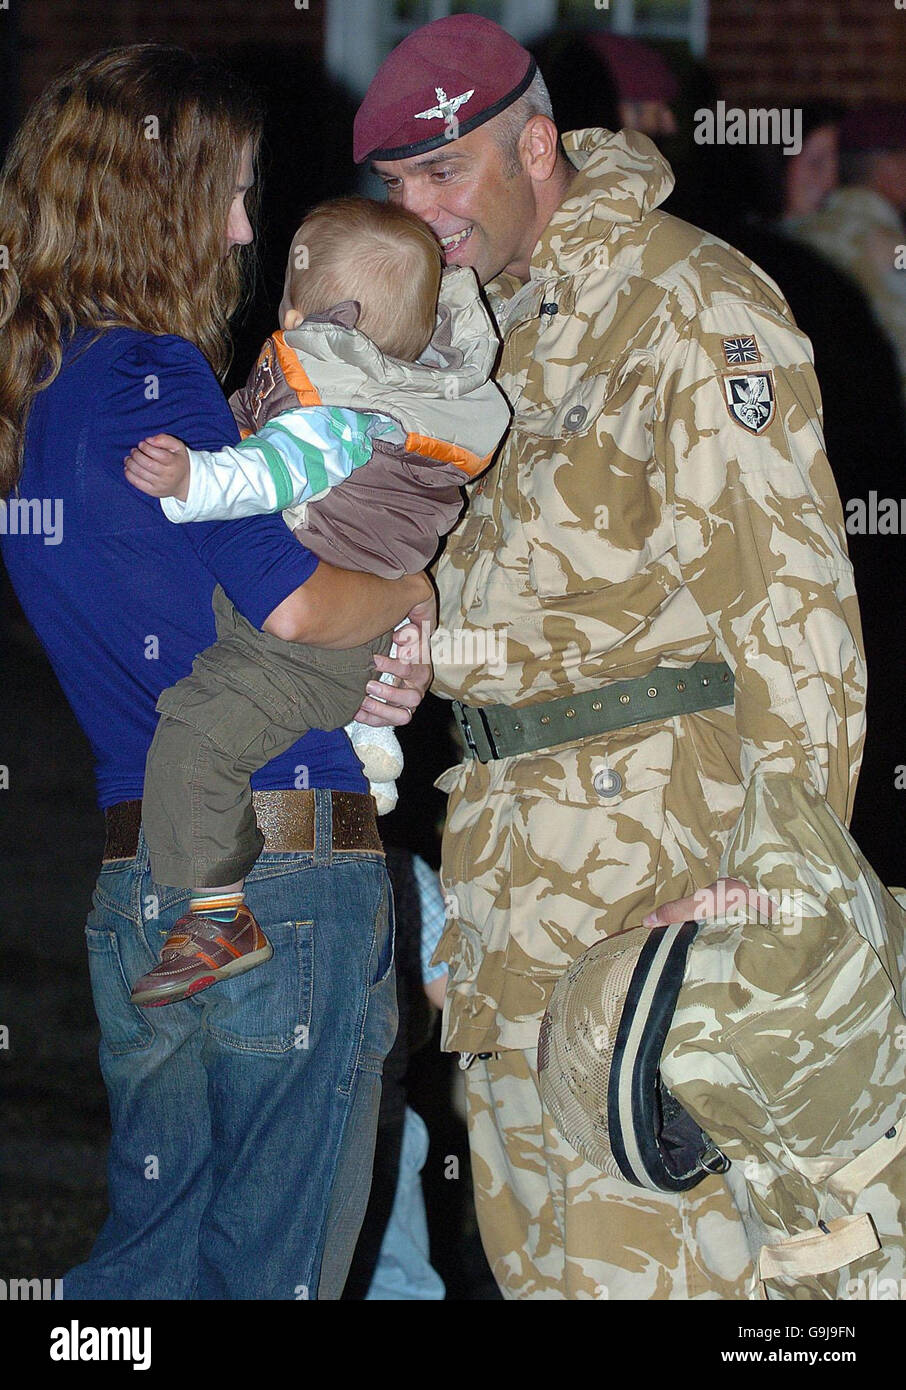 Der Militärangehörige Major Hew Williams von 3 para Battlegruppe Regiment spricht mit seinem einjährigen Sohn Ieuan, wie sein Partner Sharon nach seiner Rückkehr nach Großbritannien von einer sechsmonatigen Dienstreise in Afganistan betreut. Stockfoto